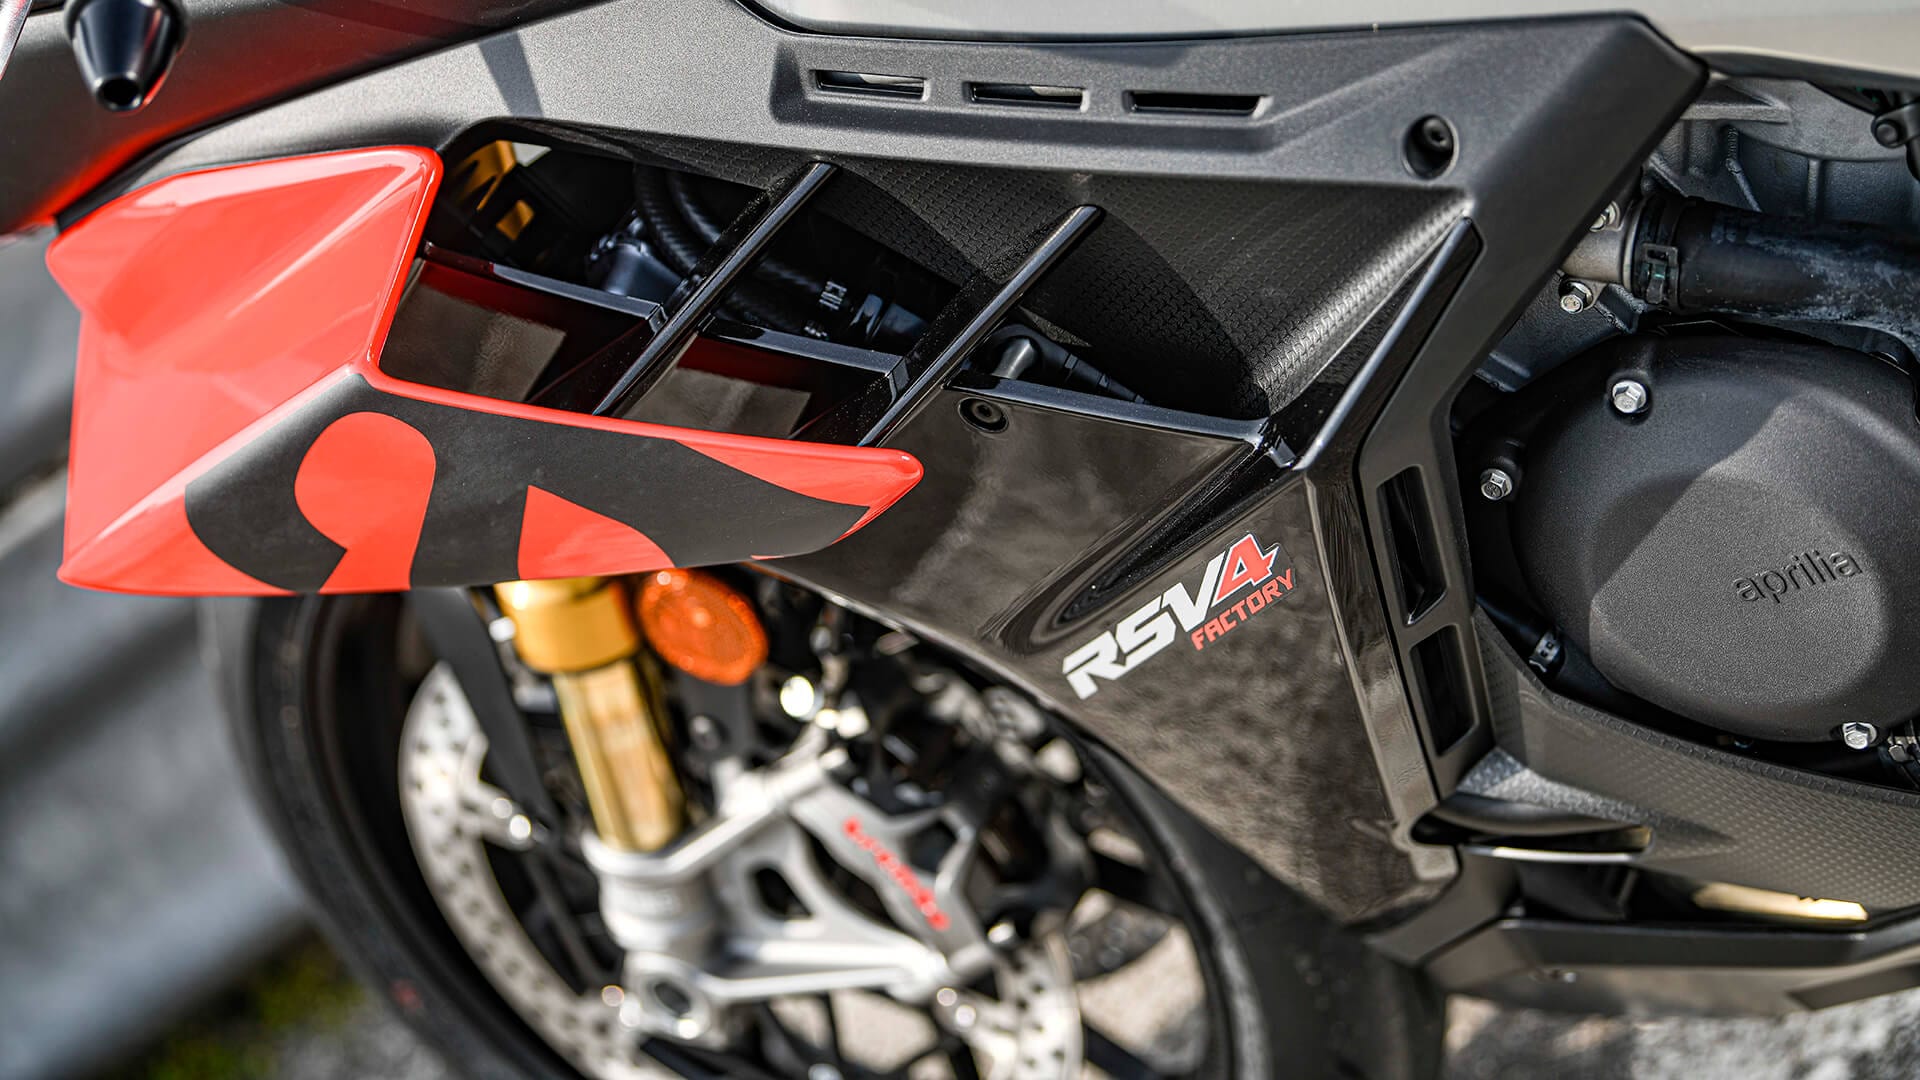 究極のスーパーバイク 新型RSV4 Factory を発売 - Moto Connect(モト 